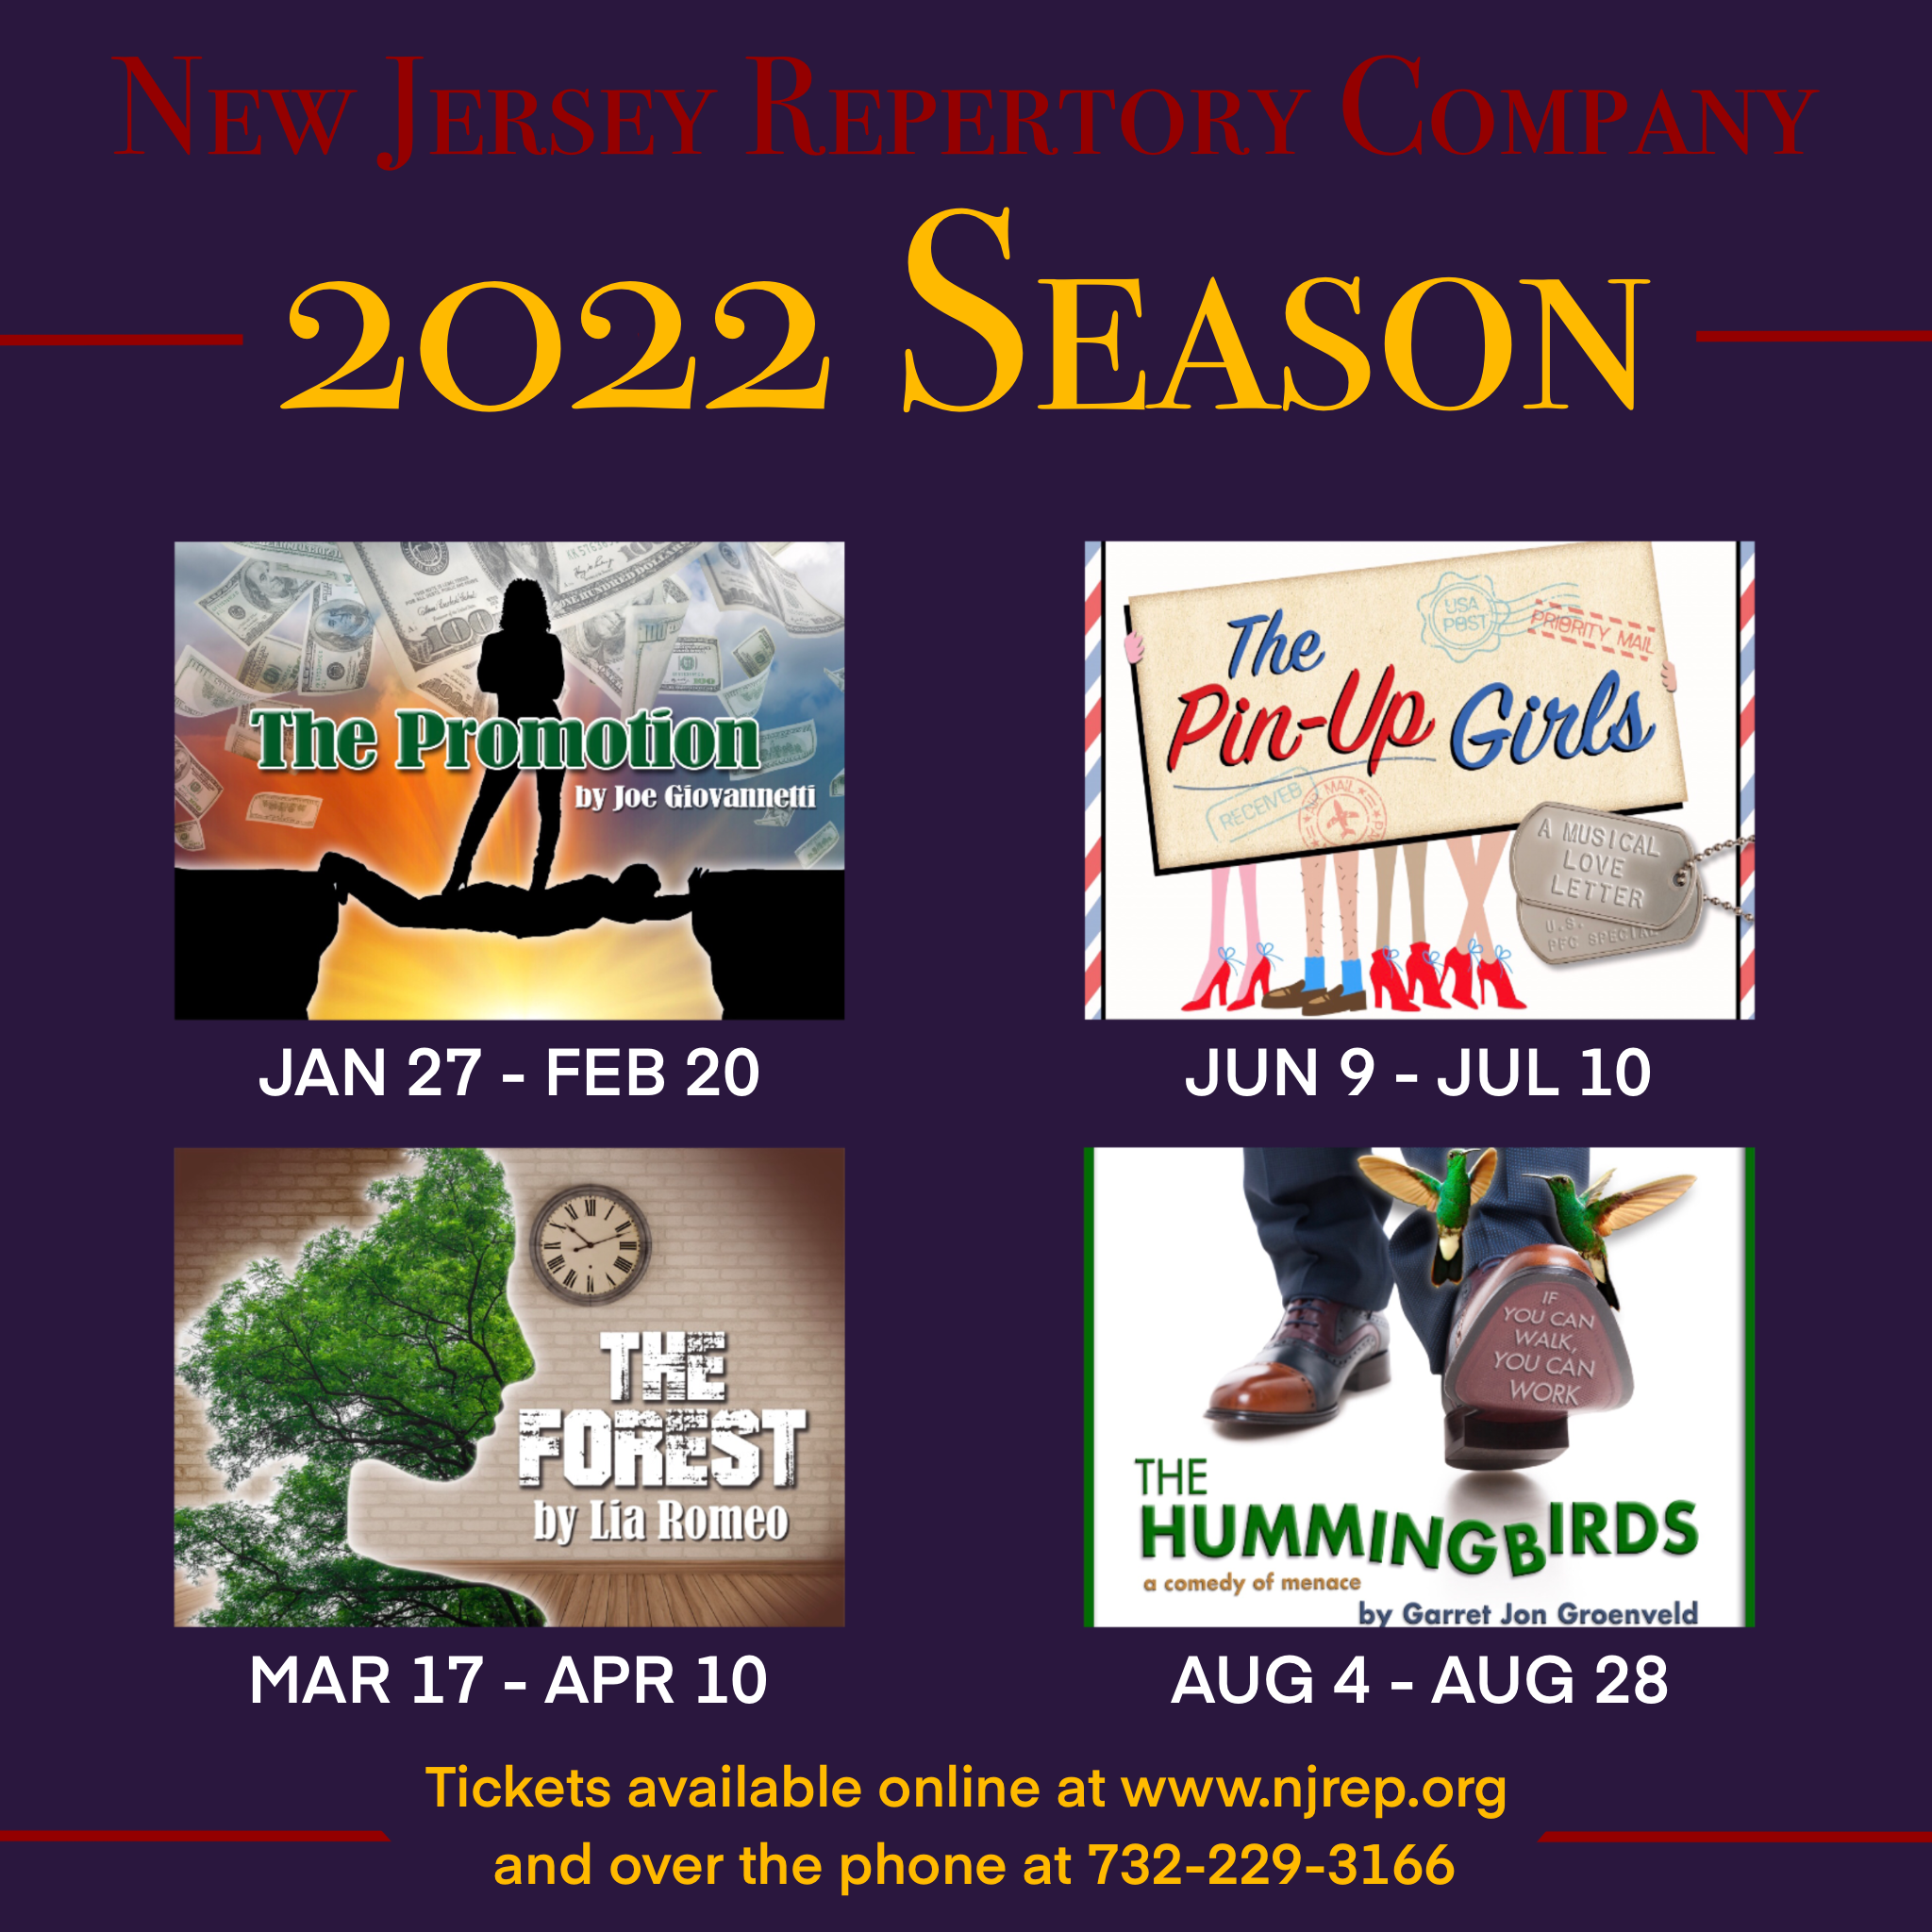 New Jersey Repertory Company's 2022 Season